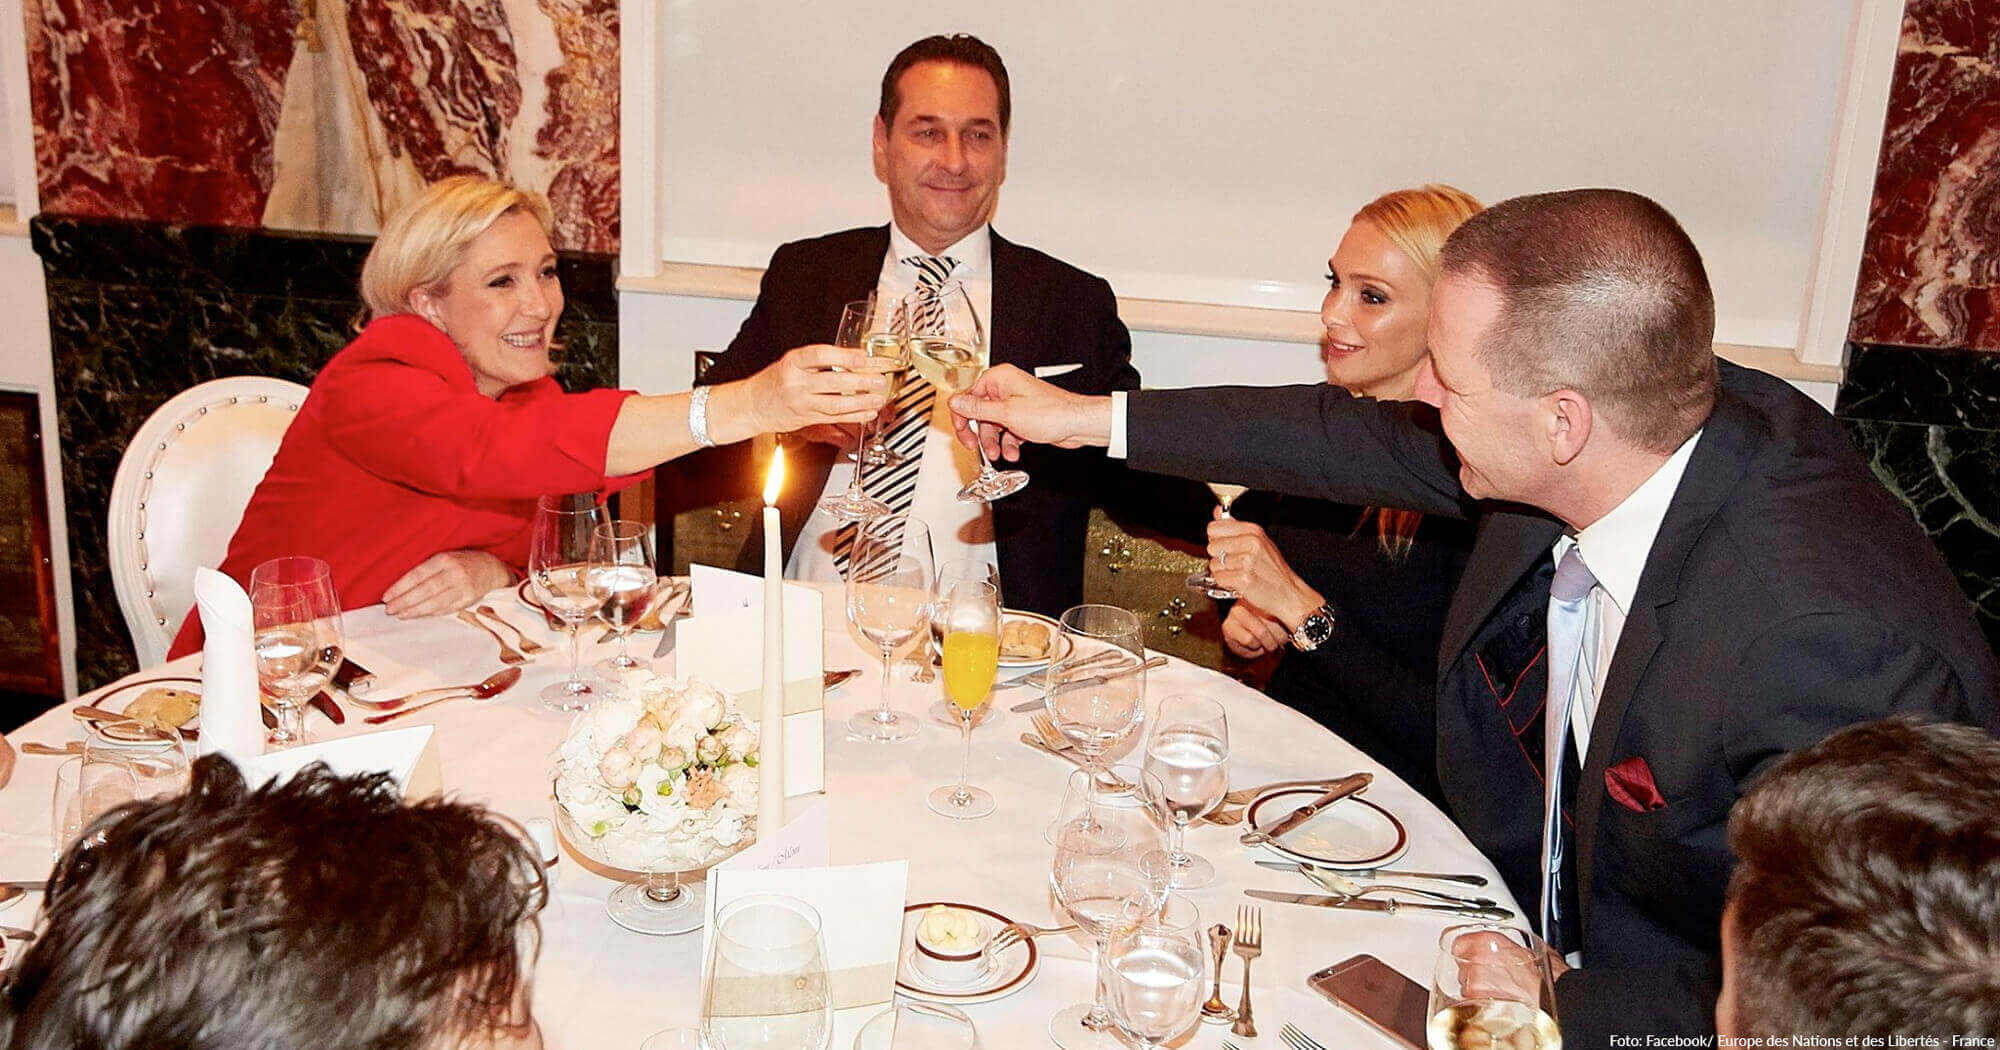 FPÖ-Fraktion wollte Champagner und 400-Euro Essen verrechnen – EU fordert Geld zurück